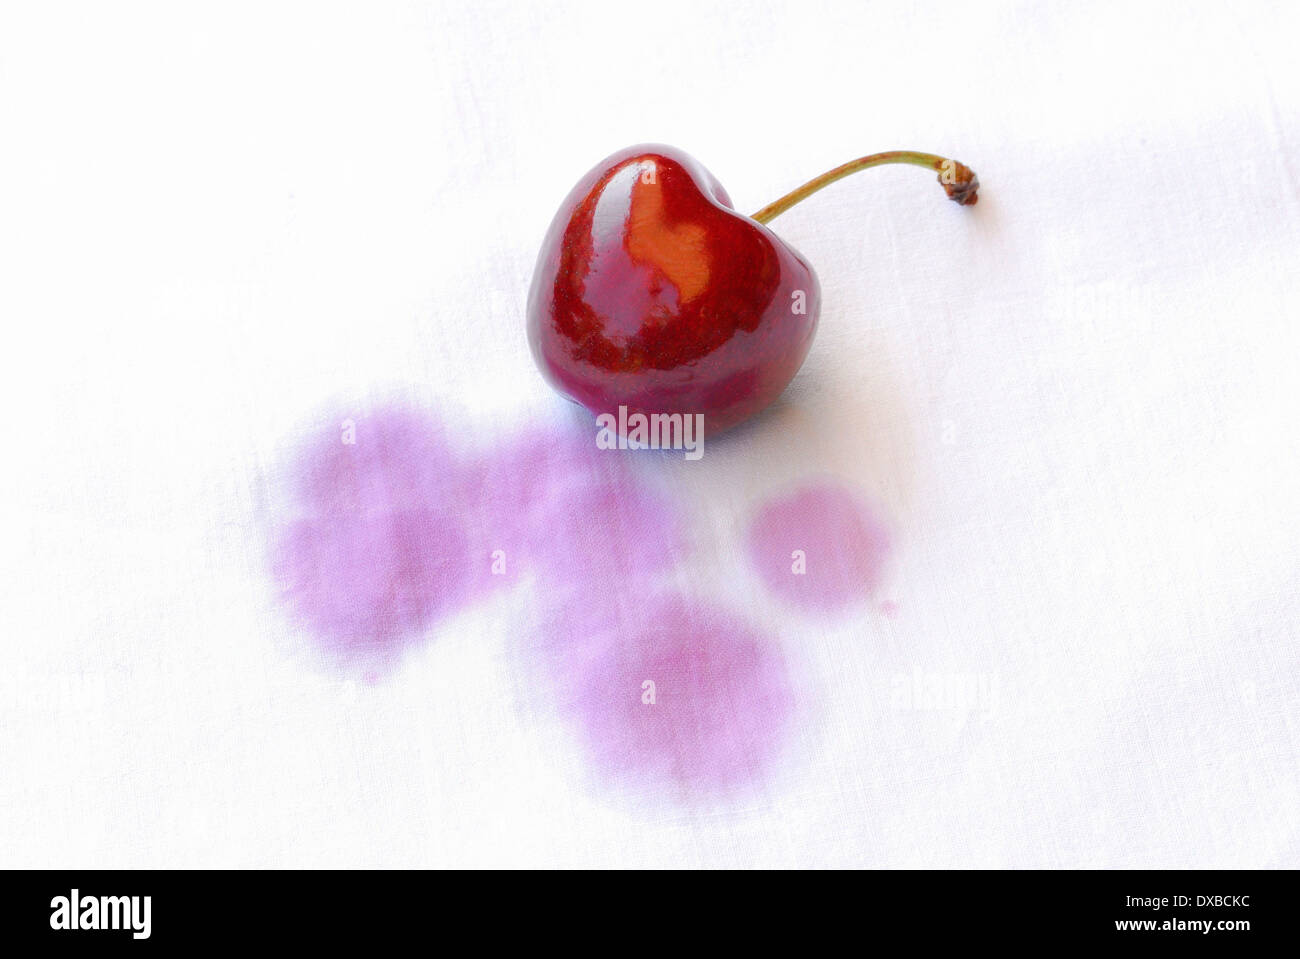 Cherry stain Stock Photo